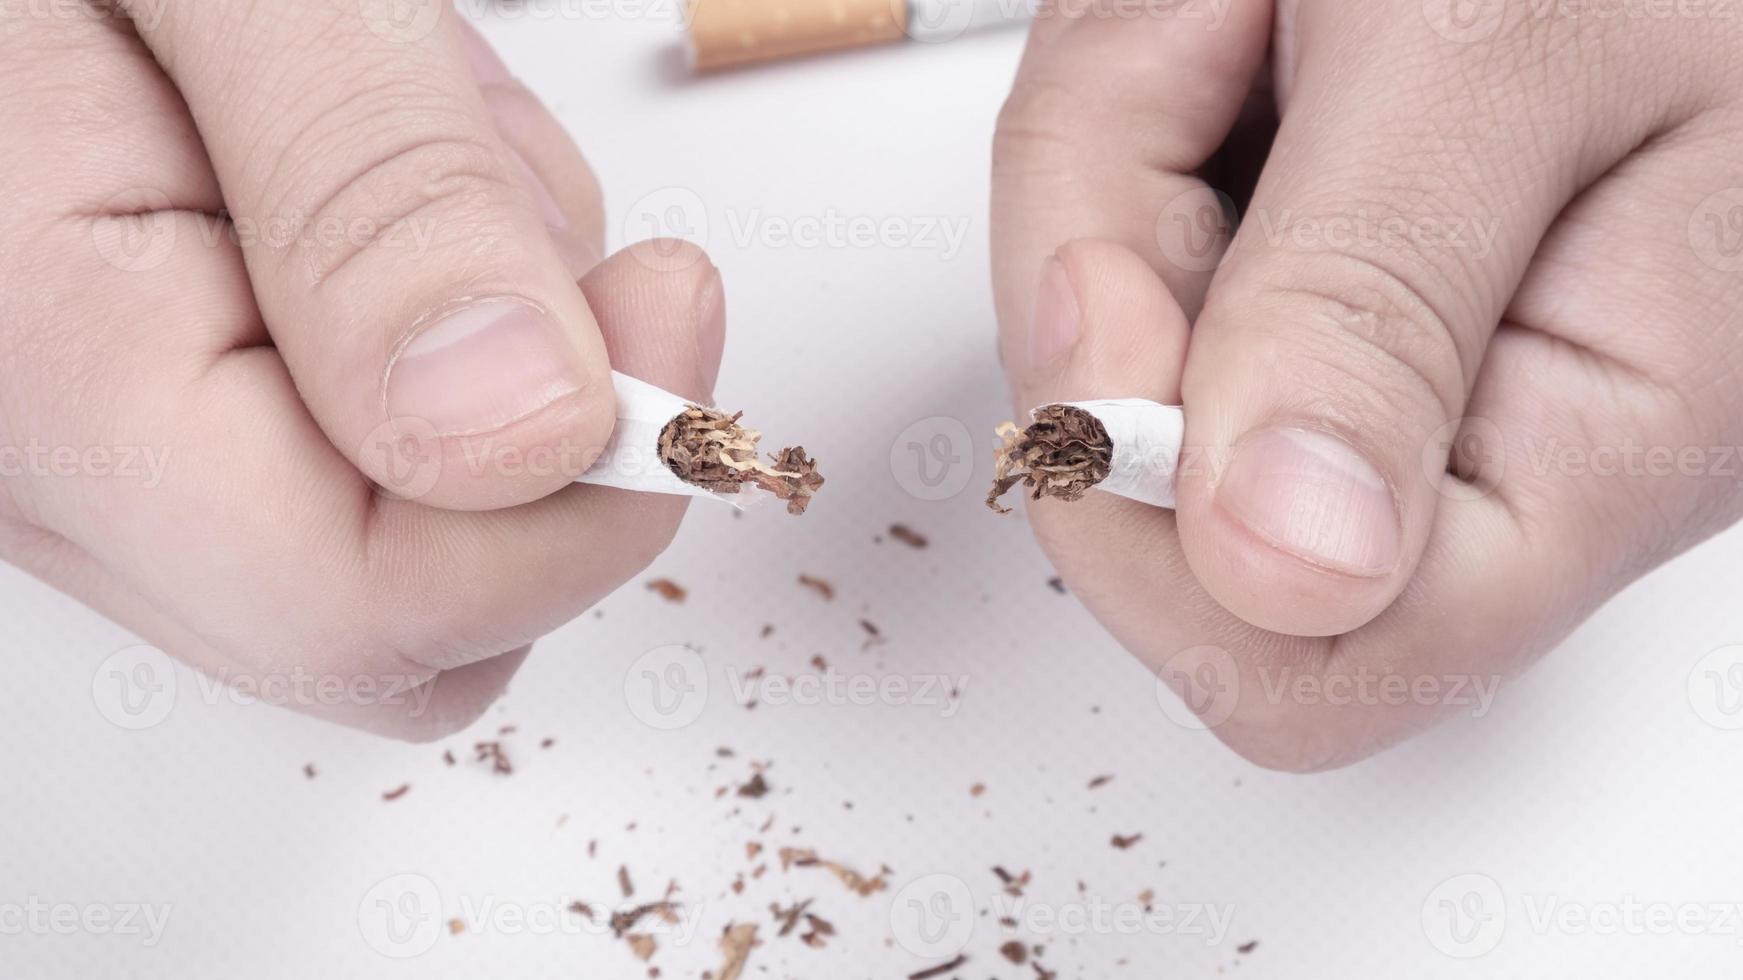 cigarro quebrado na mão, close-up, pare de fumar foto